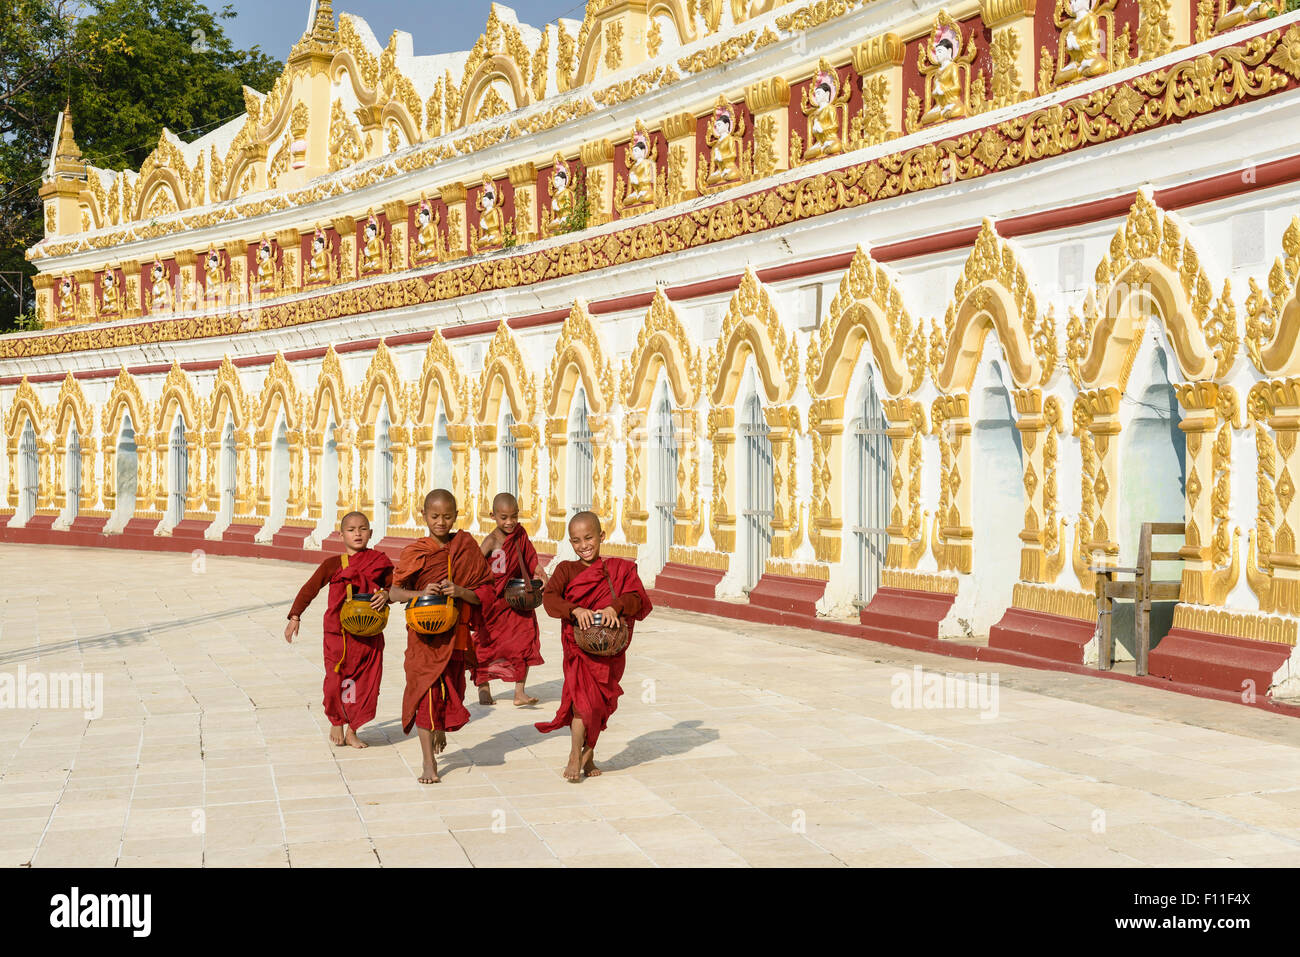 Les moines d'Asie en formation en cours d'exécution à l'extérieur de temple orné Banque D'Images